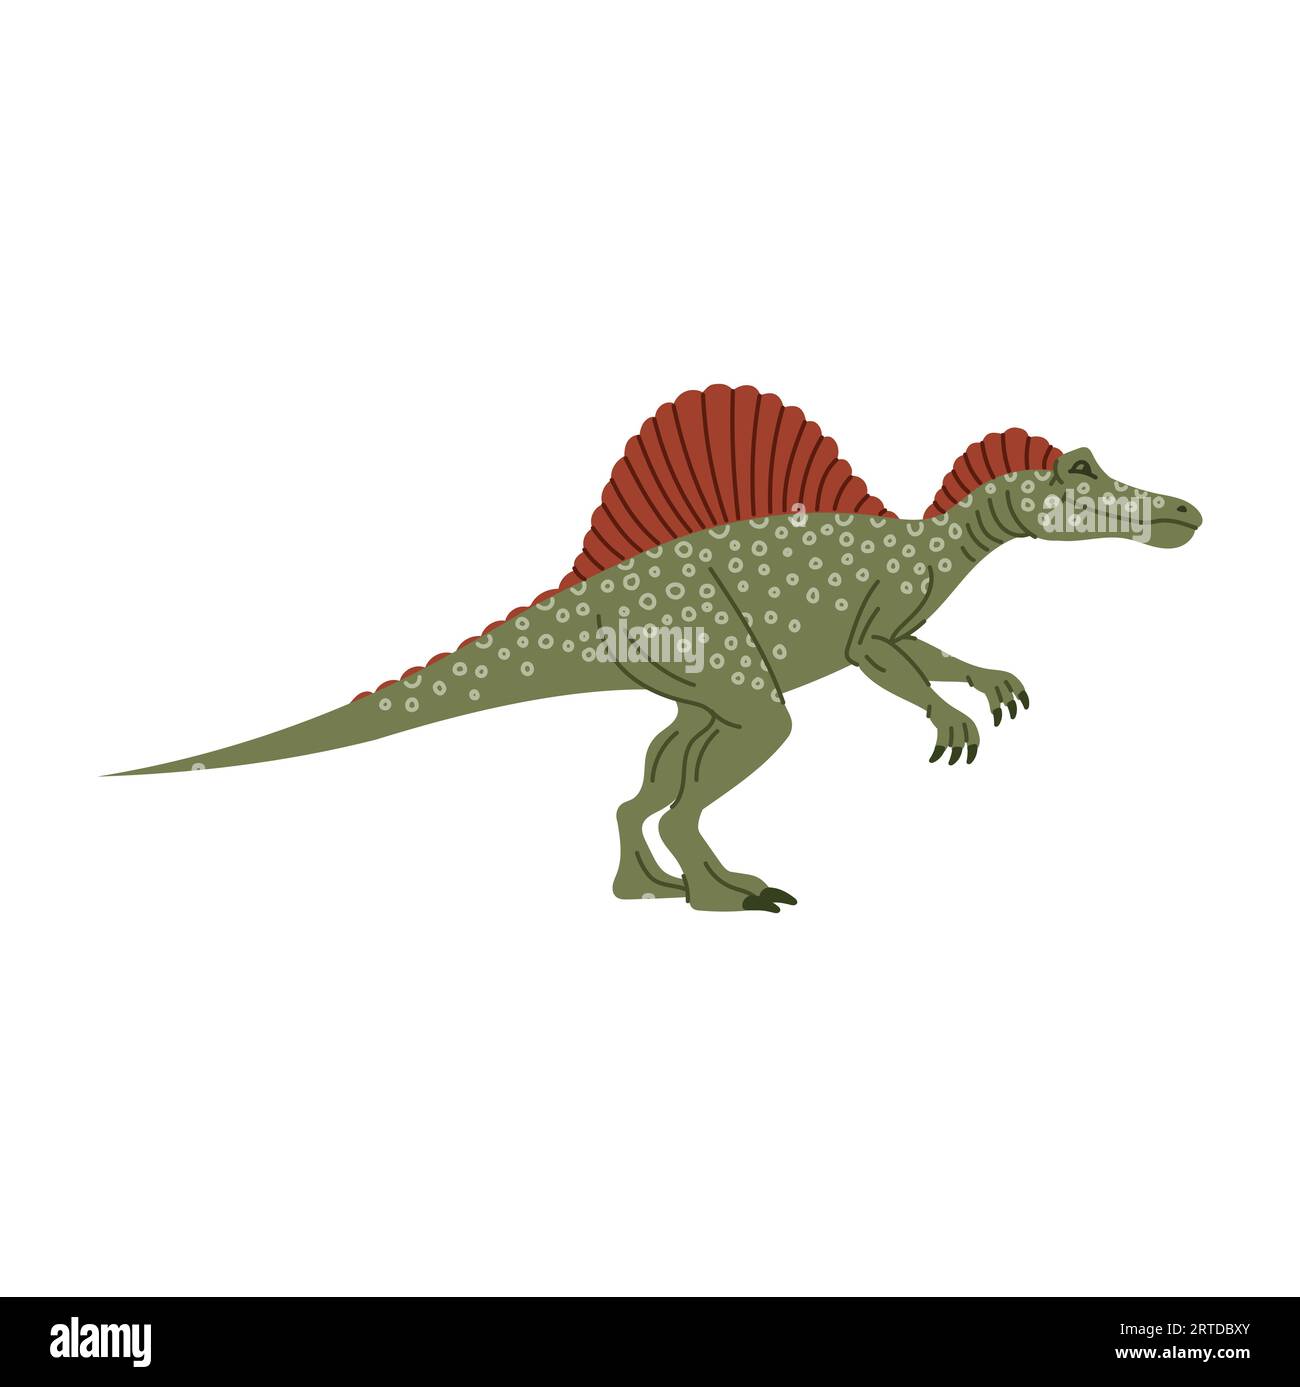 Spinosaurus isolierte Wirbelsäulenechse, Comic Theropod Dinosaurier. Vektortier aus prähistorischer Zeit, große alte Echse. Dino mit hohen neuralen Wirbelsäulen auf dem Rücken Stock Vektor